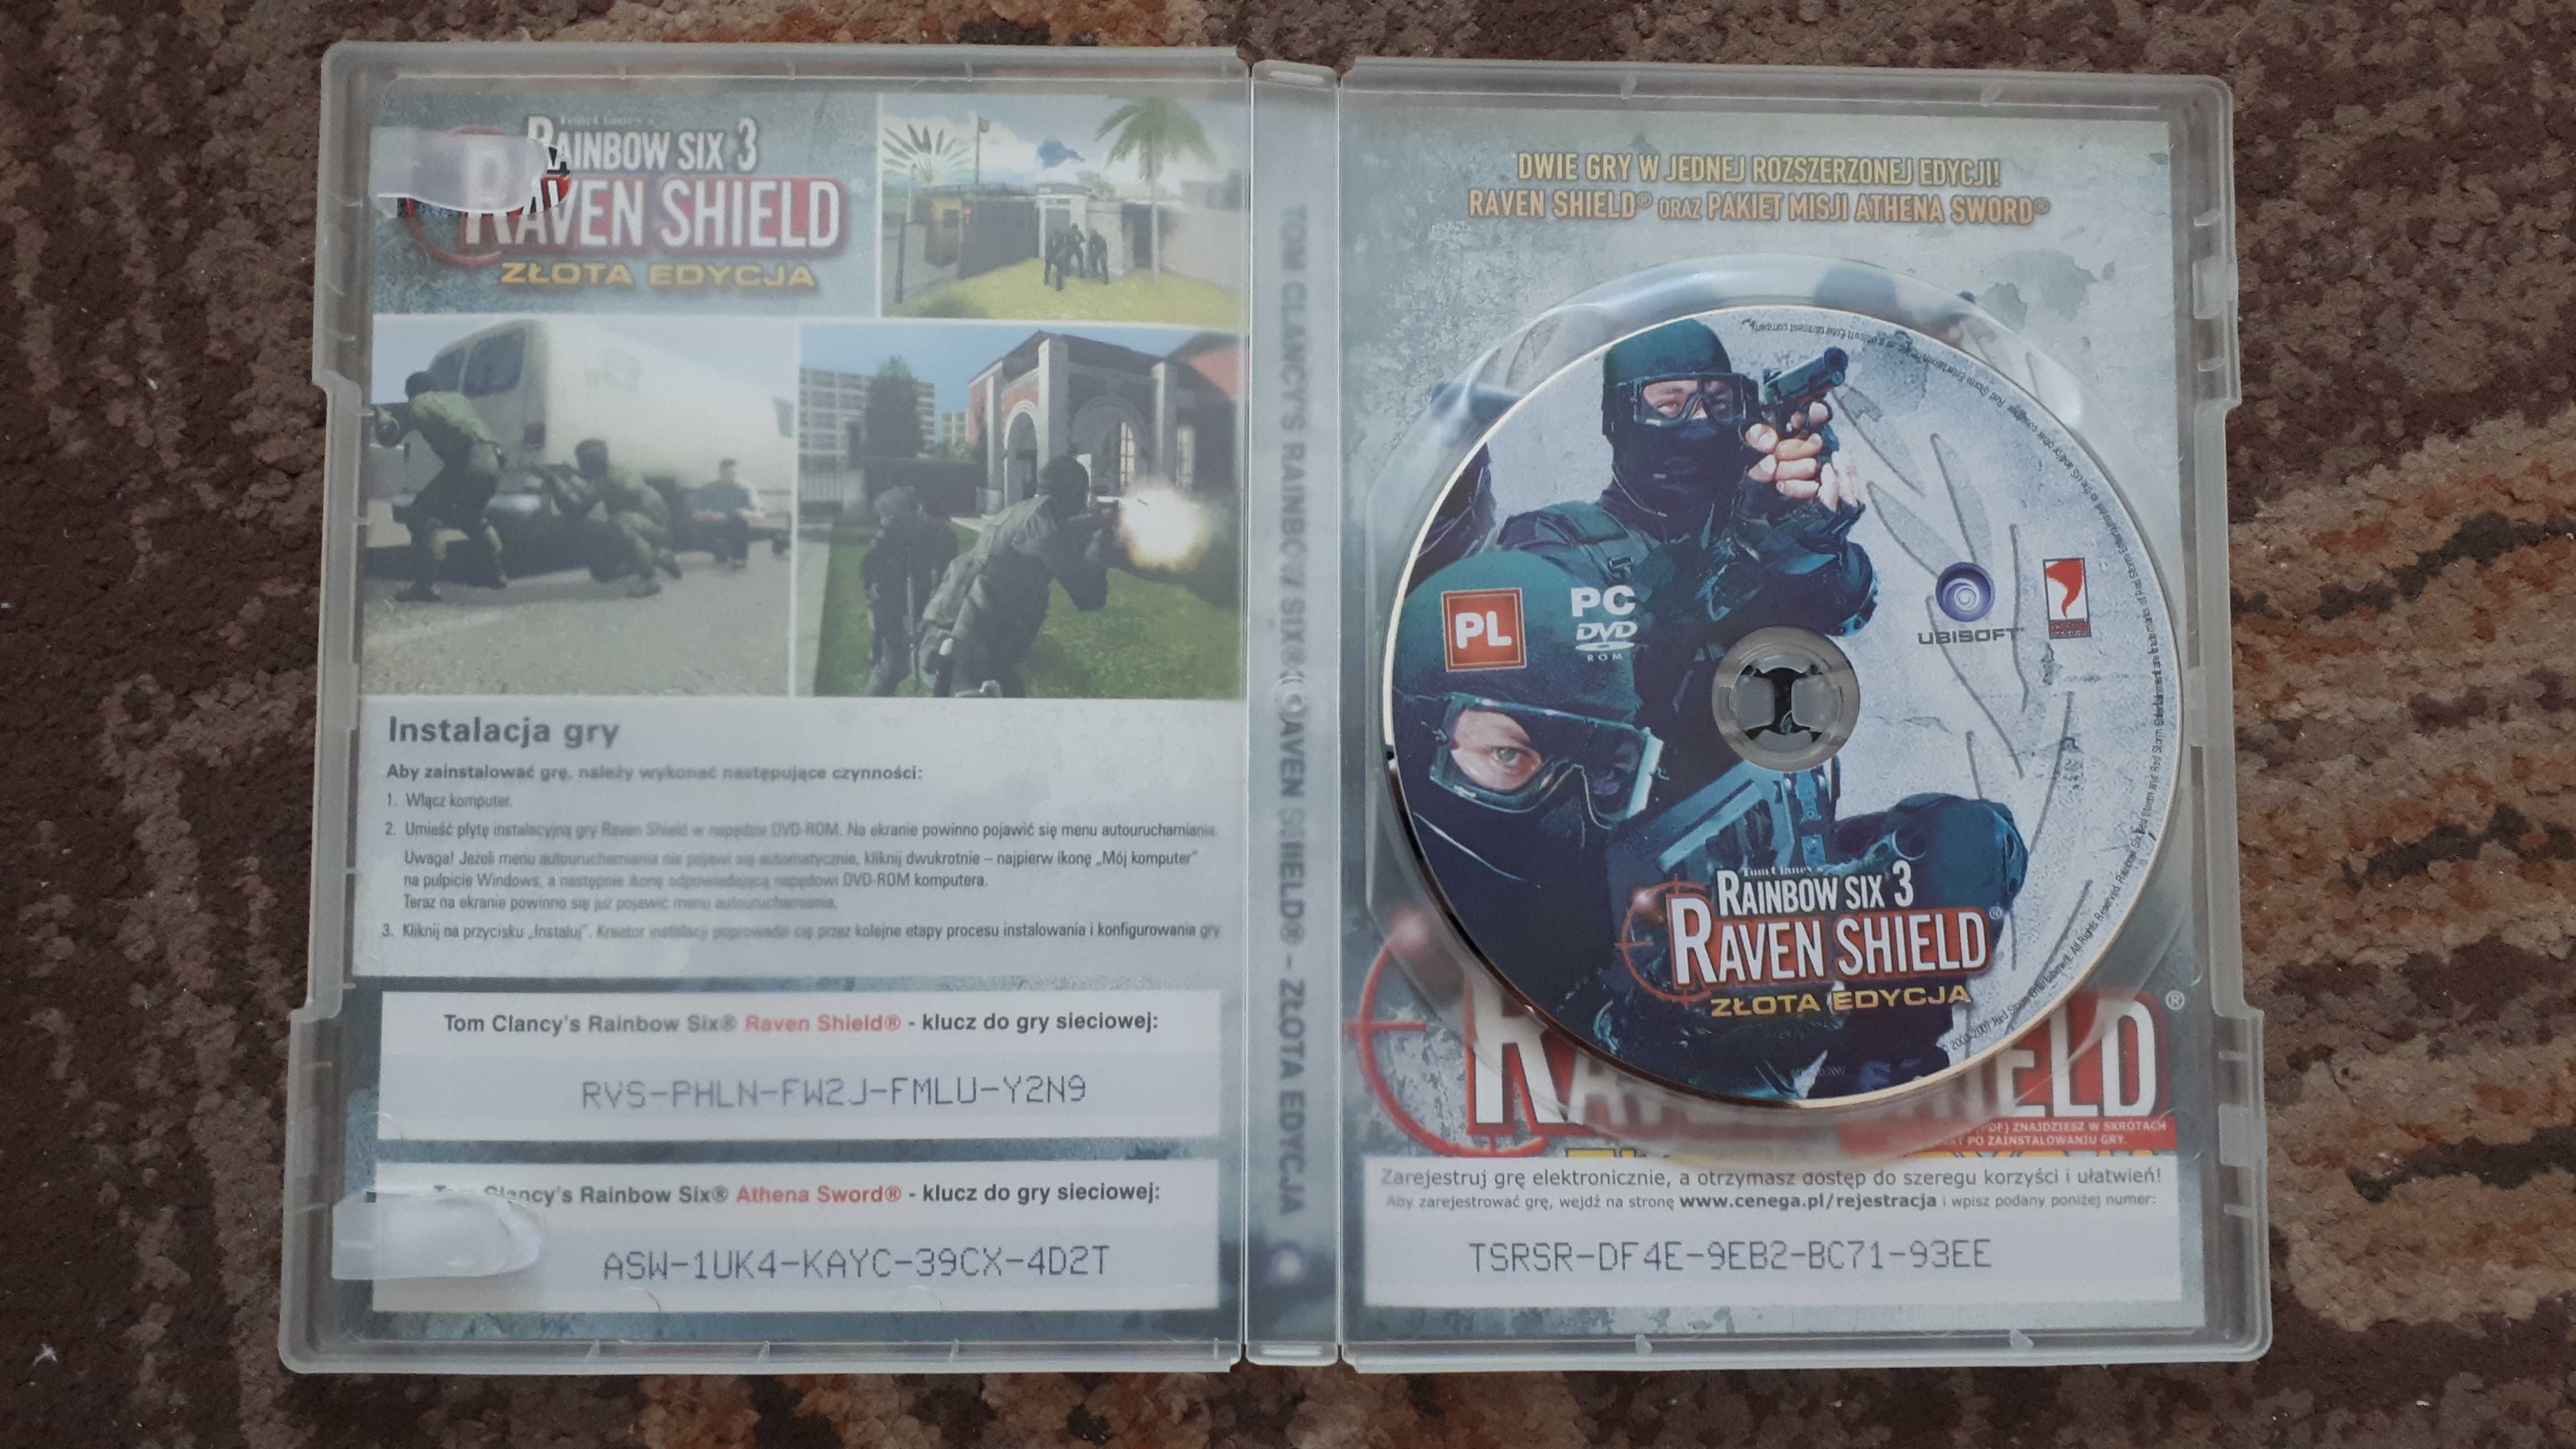 Tom Clancy's Rainbow Six 3: Raven Shield Złota Edycja (PC)